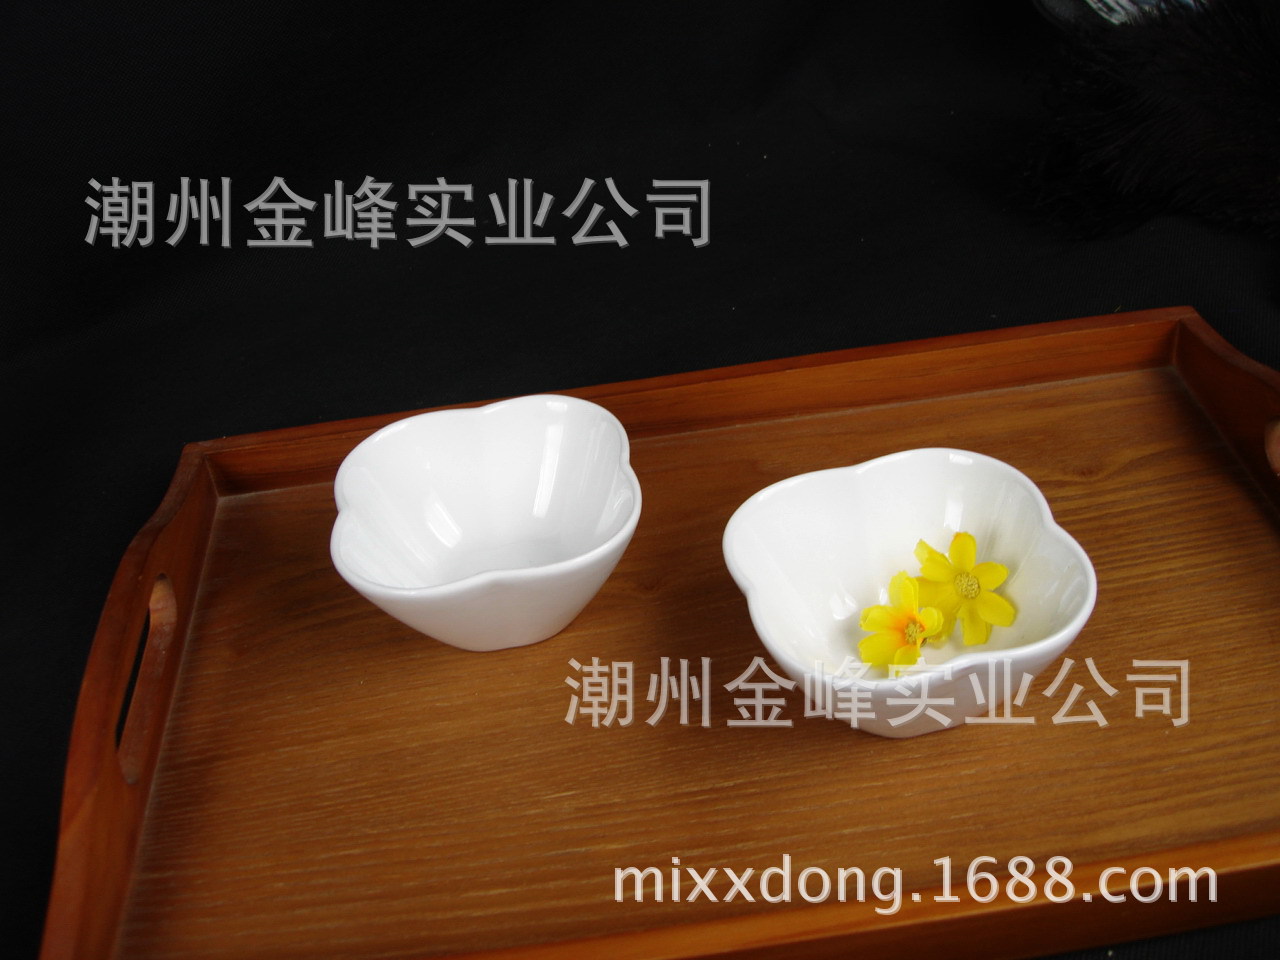 小瓷碗  4寸四叶草碗布丁甜品蘸酱碗火锅调料碗 梅花碟花瓣碗